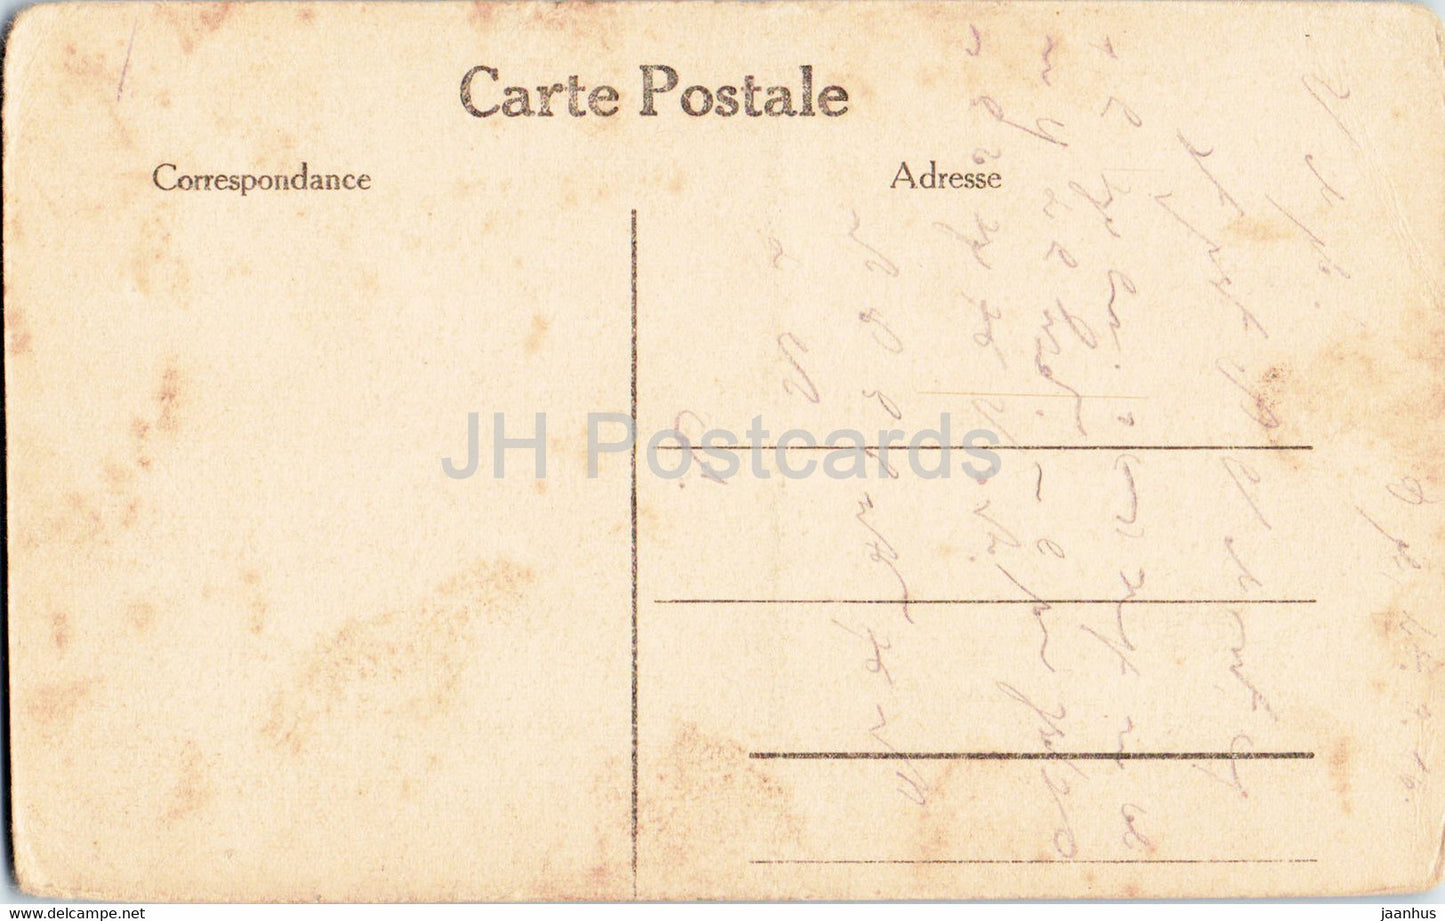 Lille - Noveau Theater - Pferdekutsche - alte Postkarte - Frankreich - gebraucht